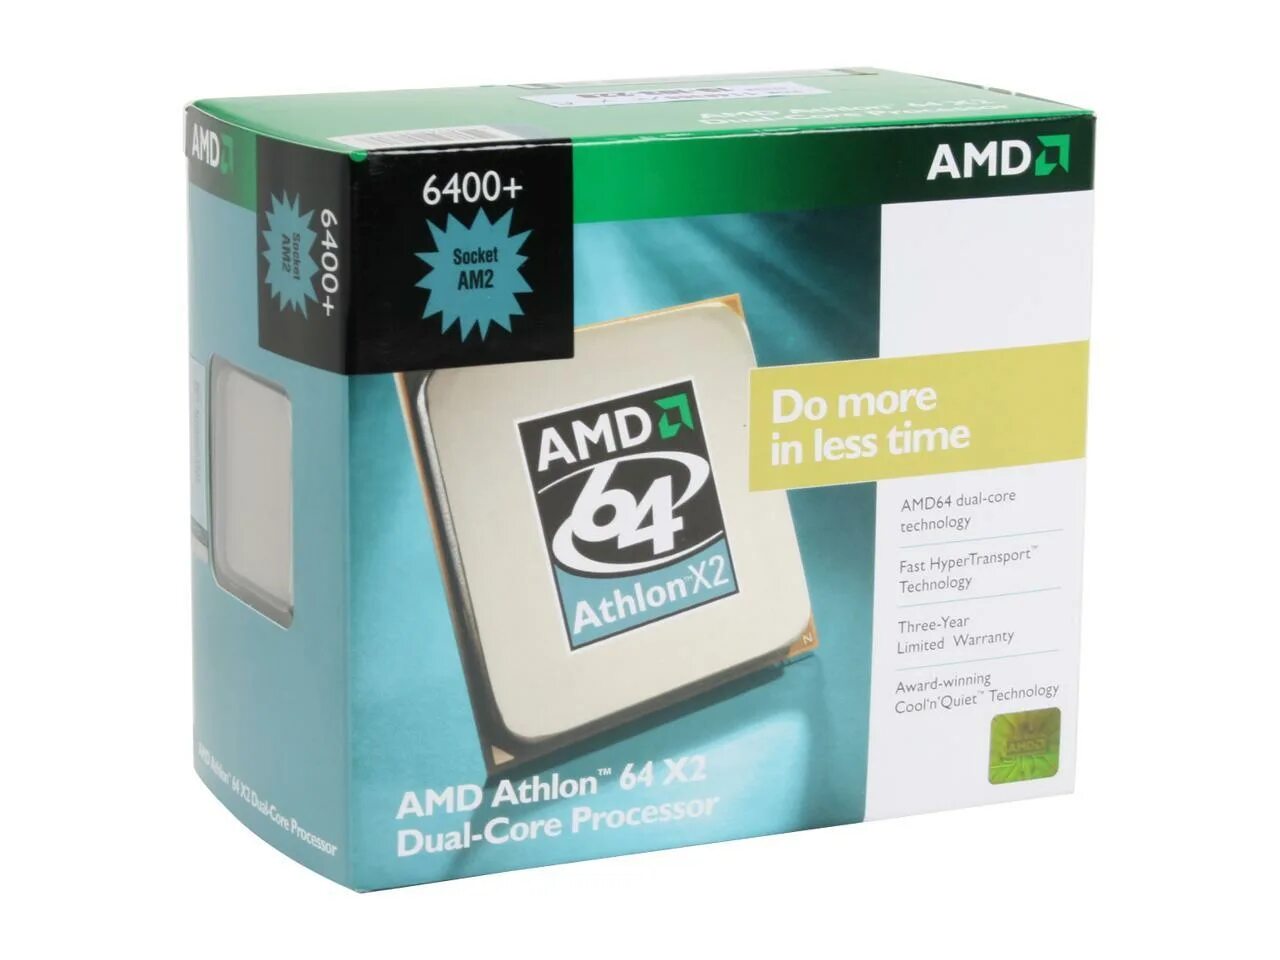 AMD Athlon 64 x2 6400+. AMD Athlon x2 Dual Core. AMD Athlon 64 x2 сокет. AMD Athlon 64 x2 Dual Core 6400+. 6400 сокет